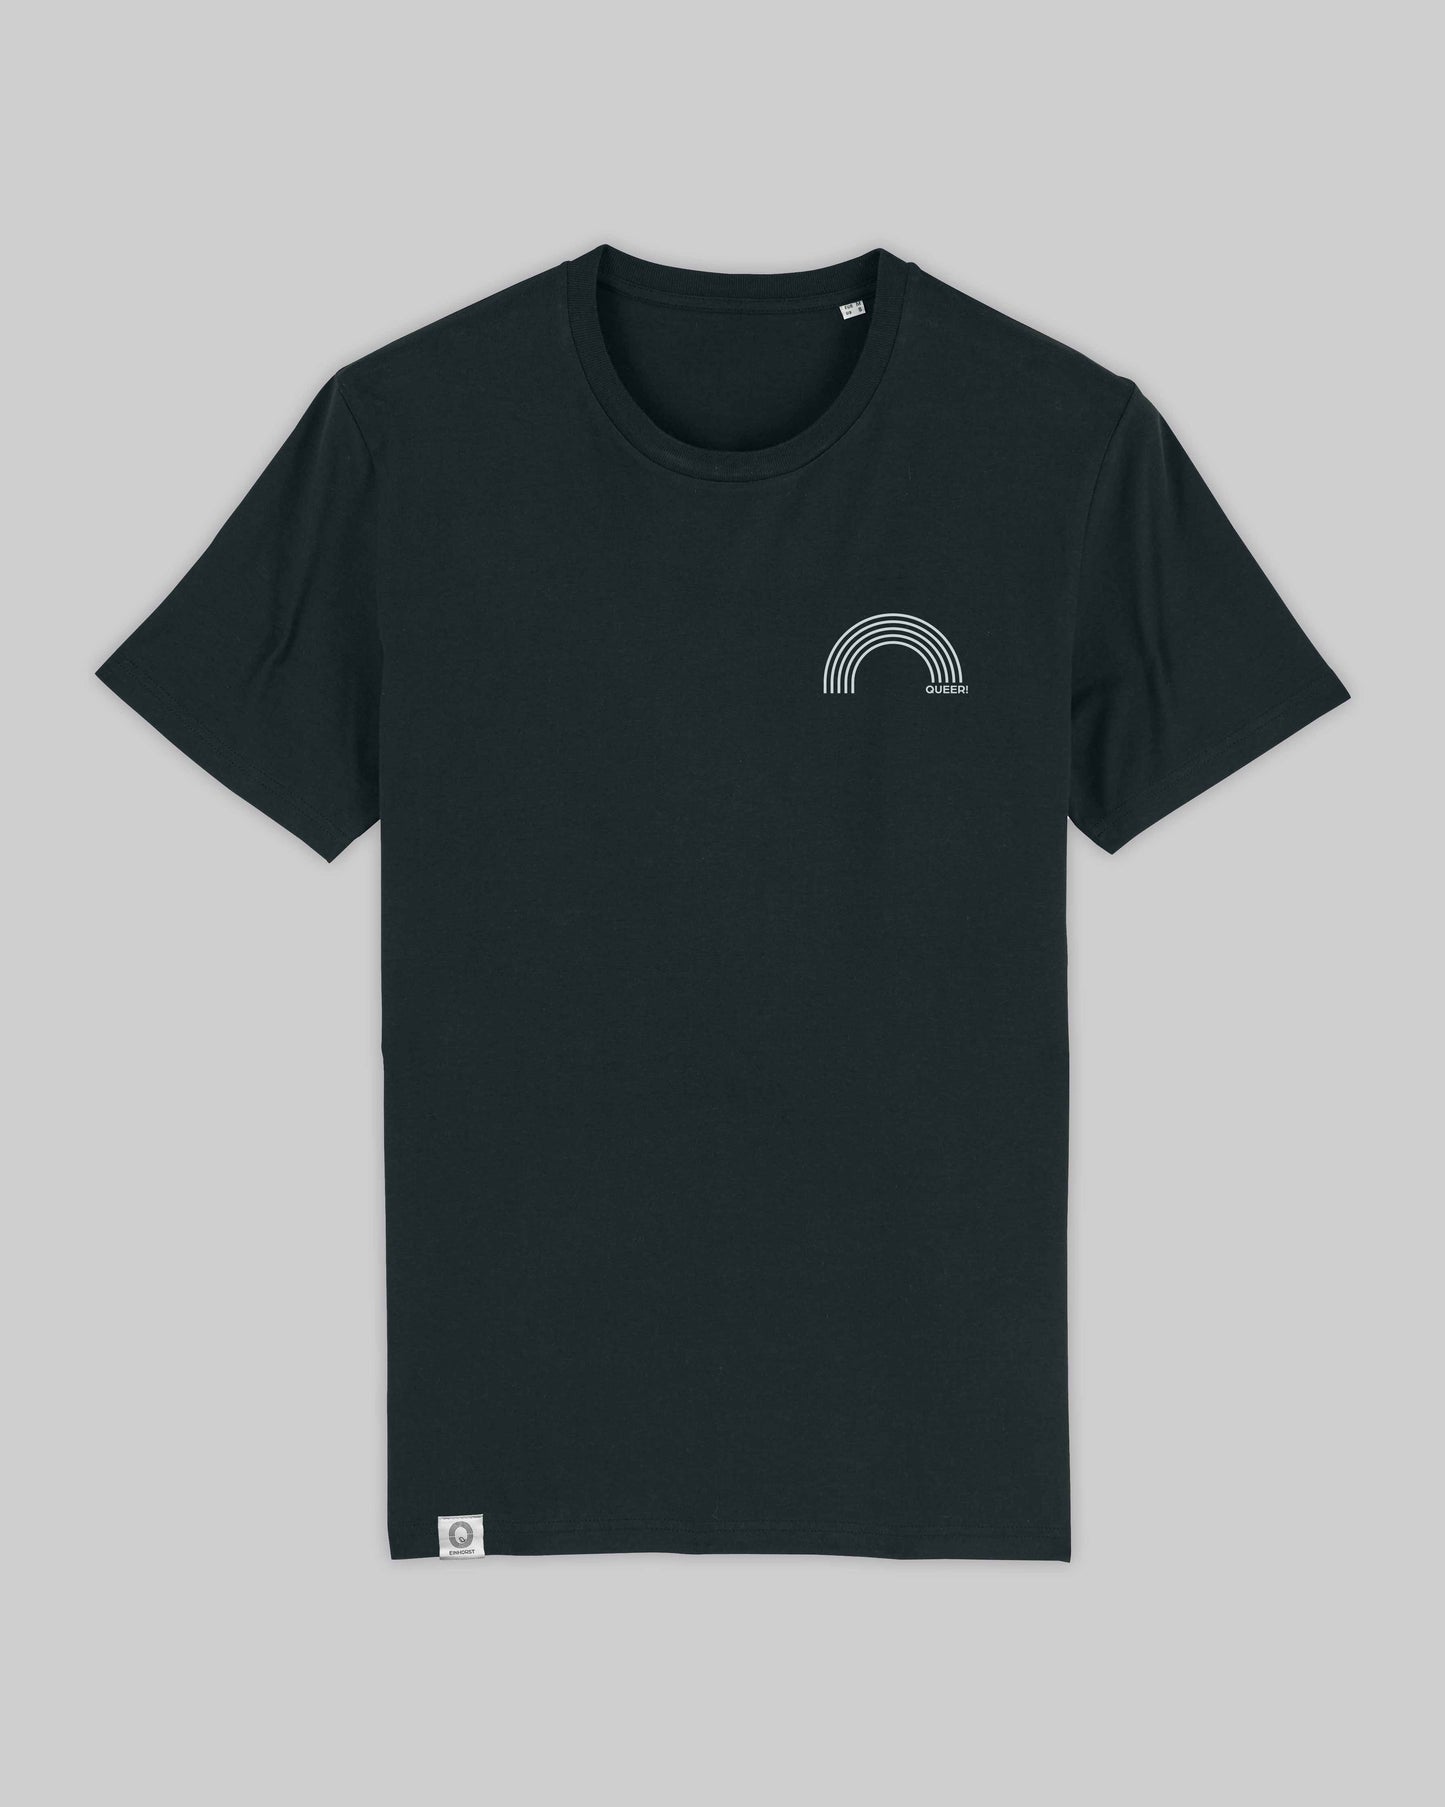 EINHORST® unisex Organic Shirt in Schwarz mit dem Motiv "queer Regenbogen" in der Kombination weißer Regenbogen mit weißer Schrift, Bild von Shirt von vorne